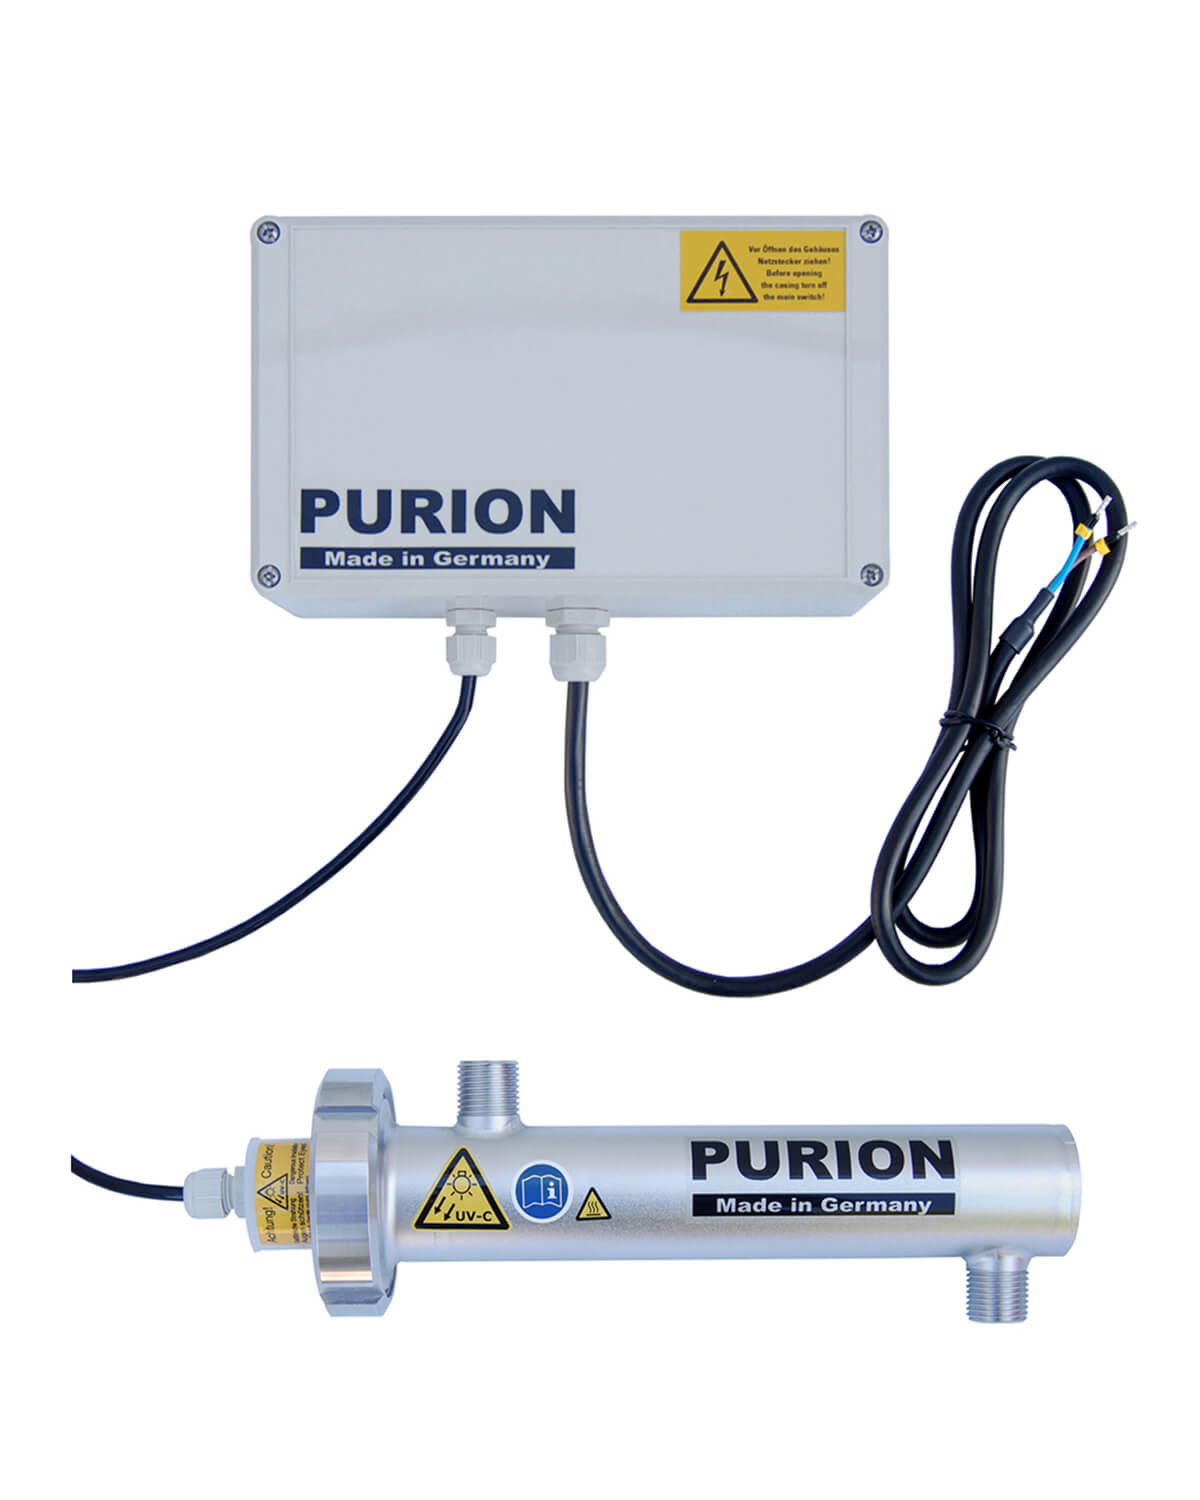 Dieser PURION 400 12 V/24 V DC Basic reinigt Trinkwasser und macht es für den sicheren Konsum an jedem Ort geeignet.